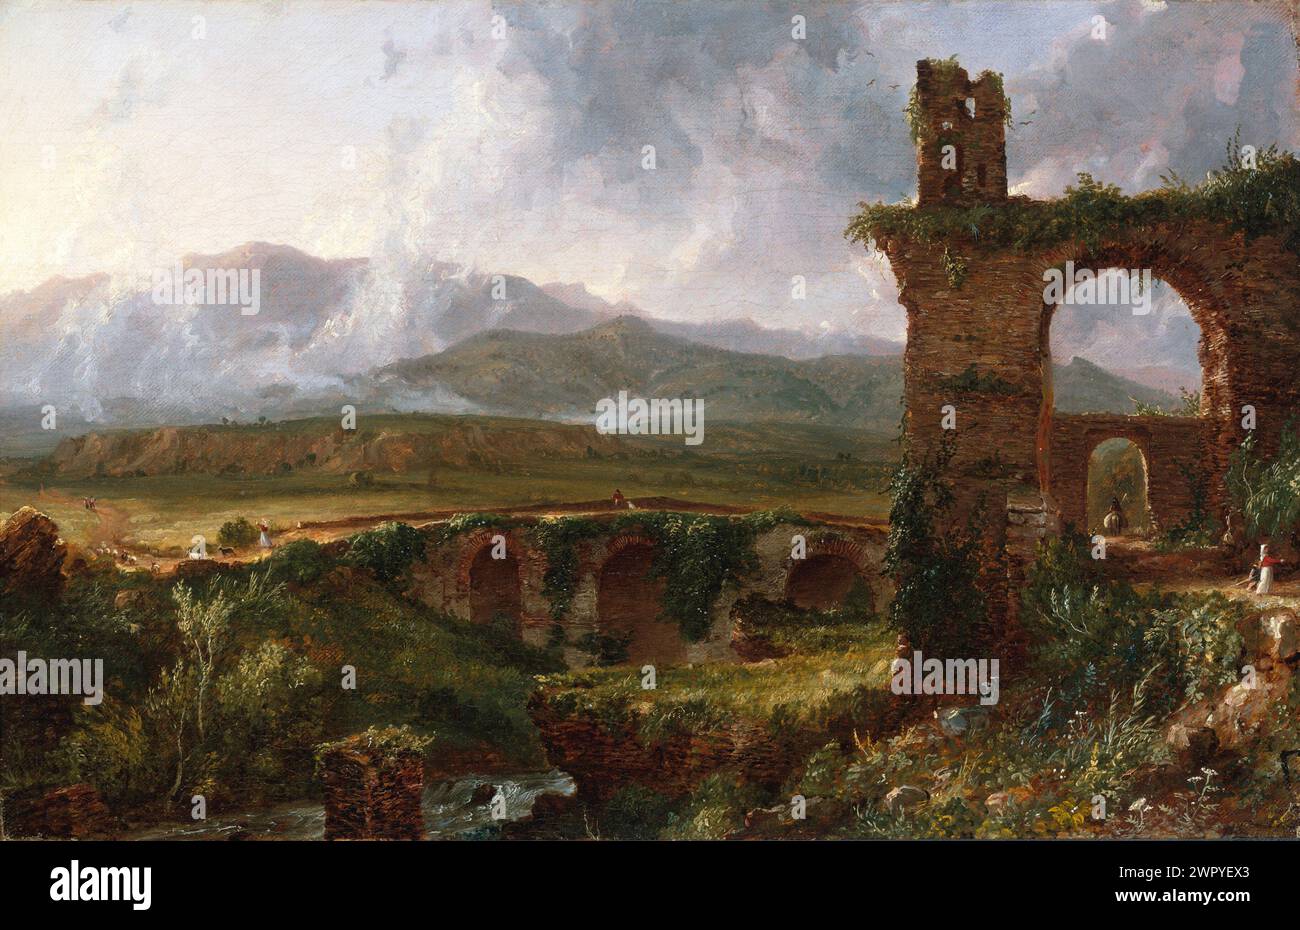 Peinture à l'huile de l'artiste américain Thomas Cole, fondateur de l'Hudson River School of Art, A View Near Tivoli (matin) CA. 1832 Banque D'Images